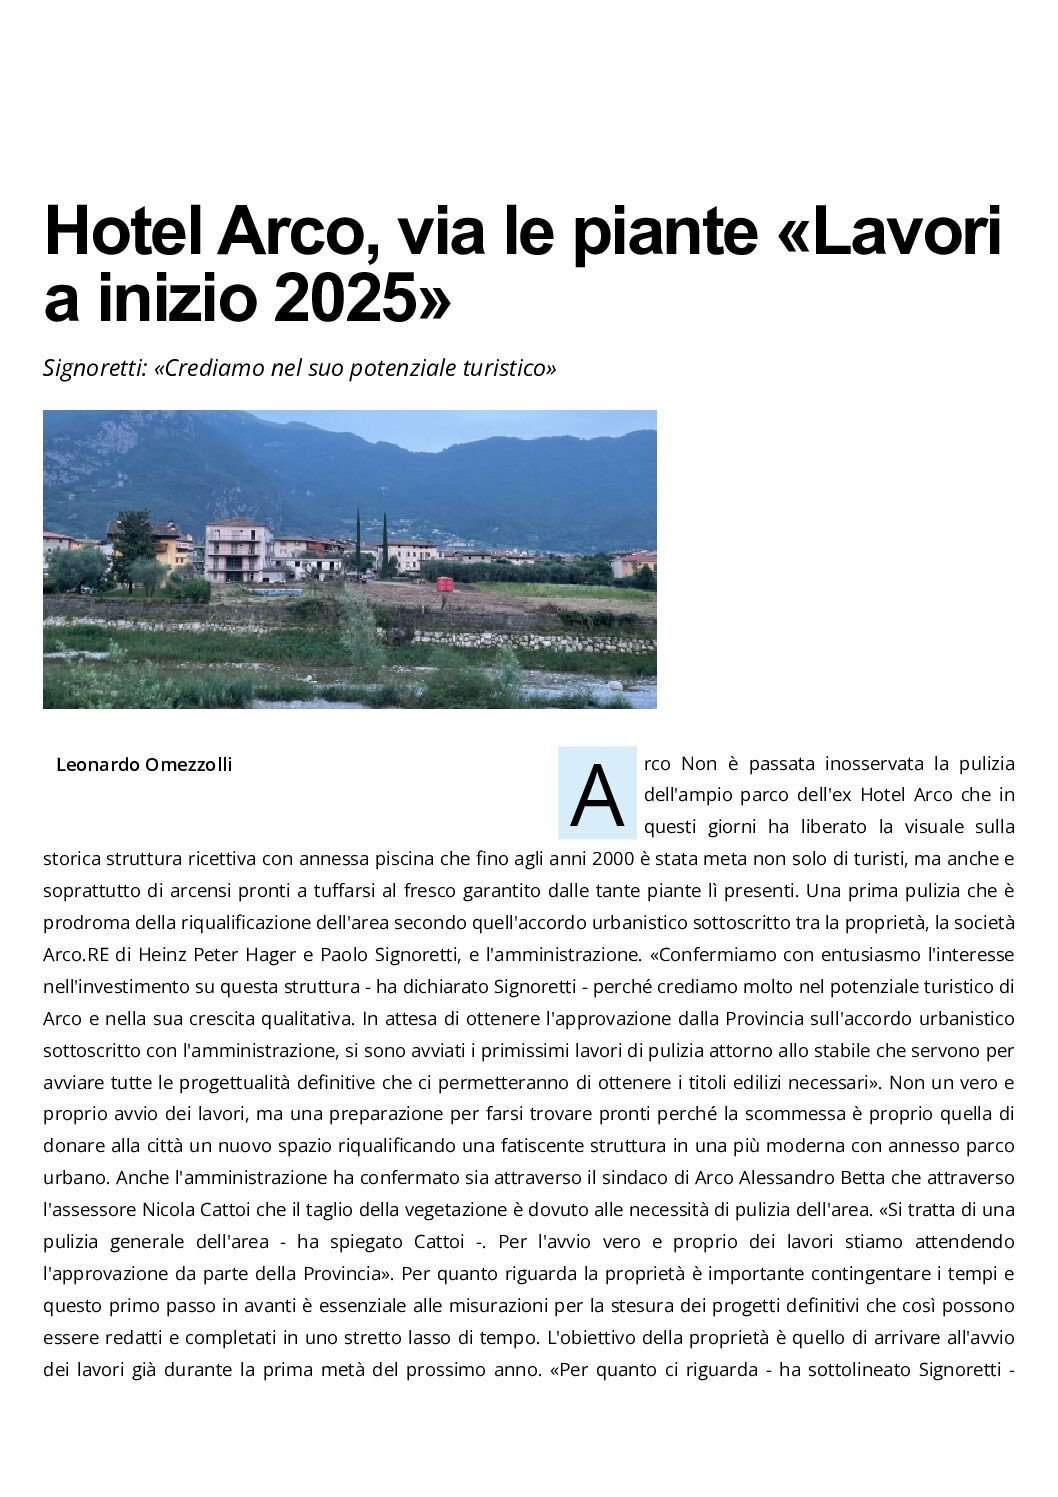 Hotel Arco: via le piante “lavori a inizio 2025”